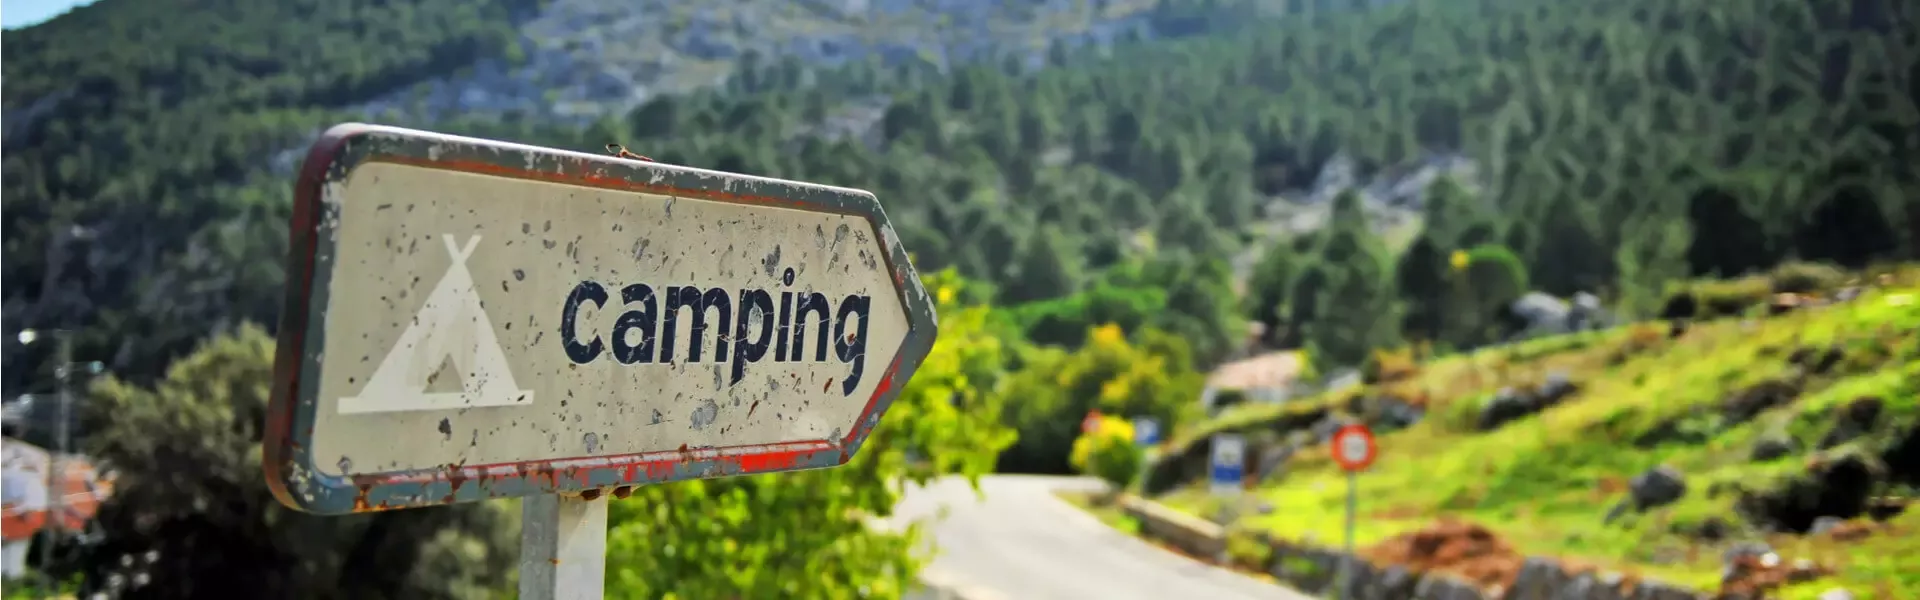 Goedkope campings in Duitsland